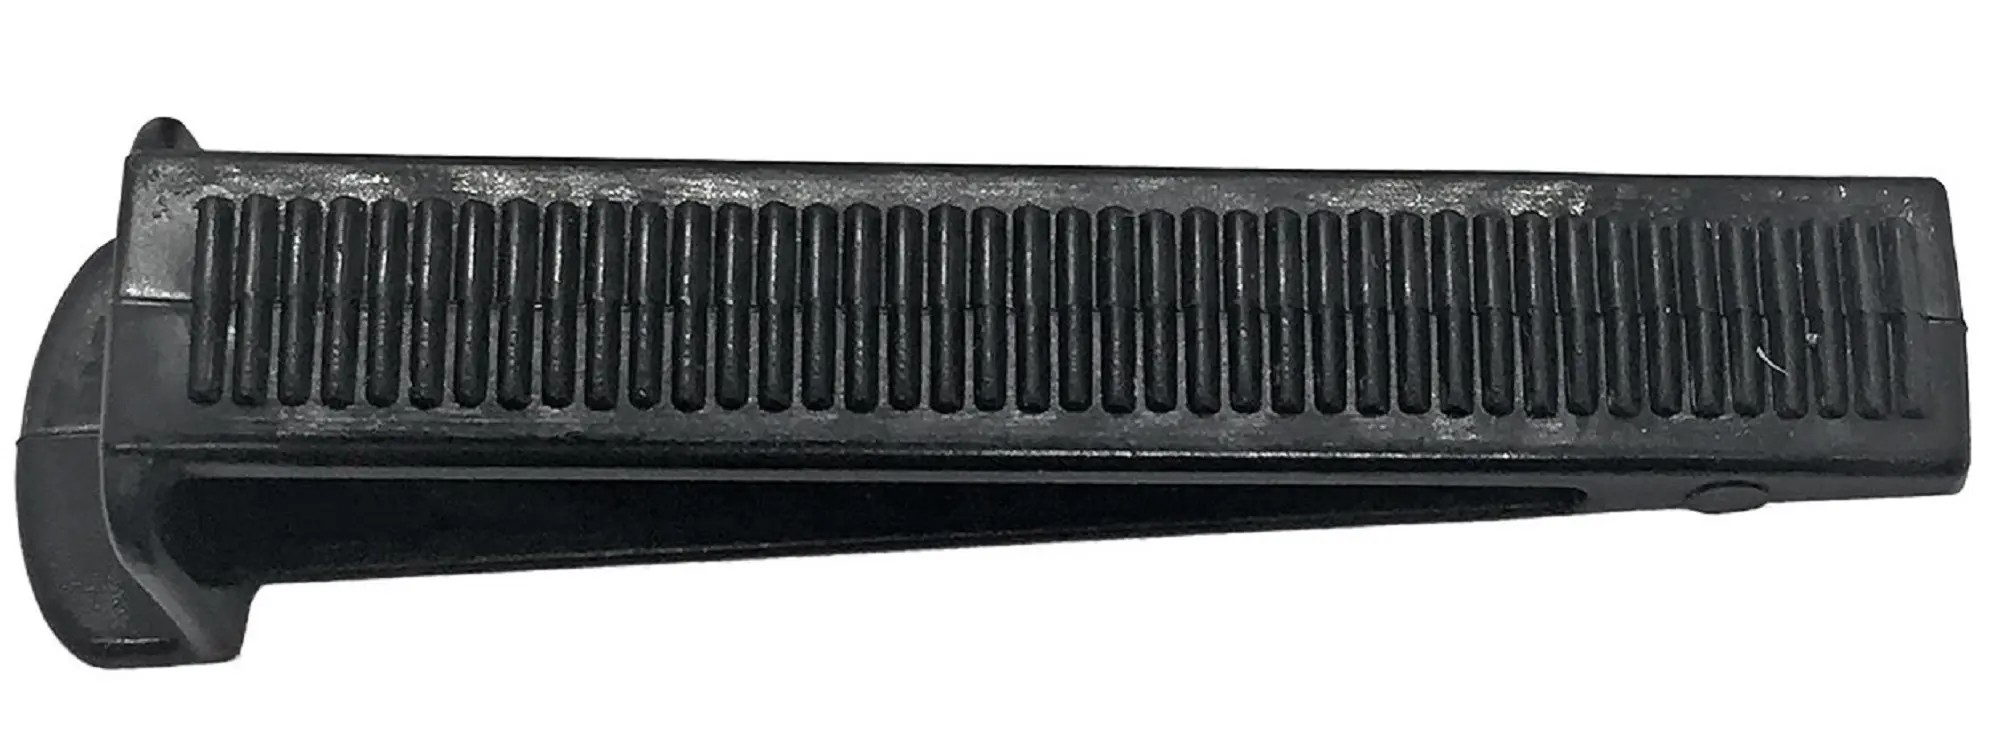 Клин для системы выравнивания плитки Dexter 100 шт комплект для системы выравнивания плитки зажимы и клинья свп 1 5 мм 200 100шт